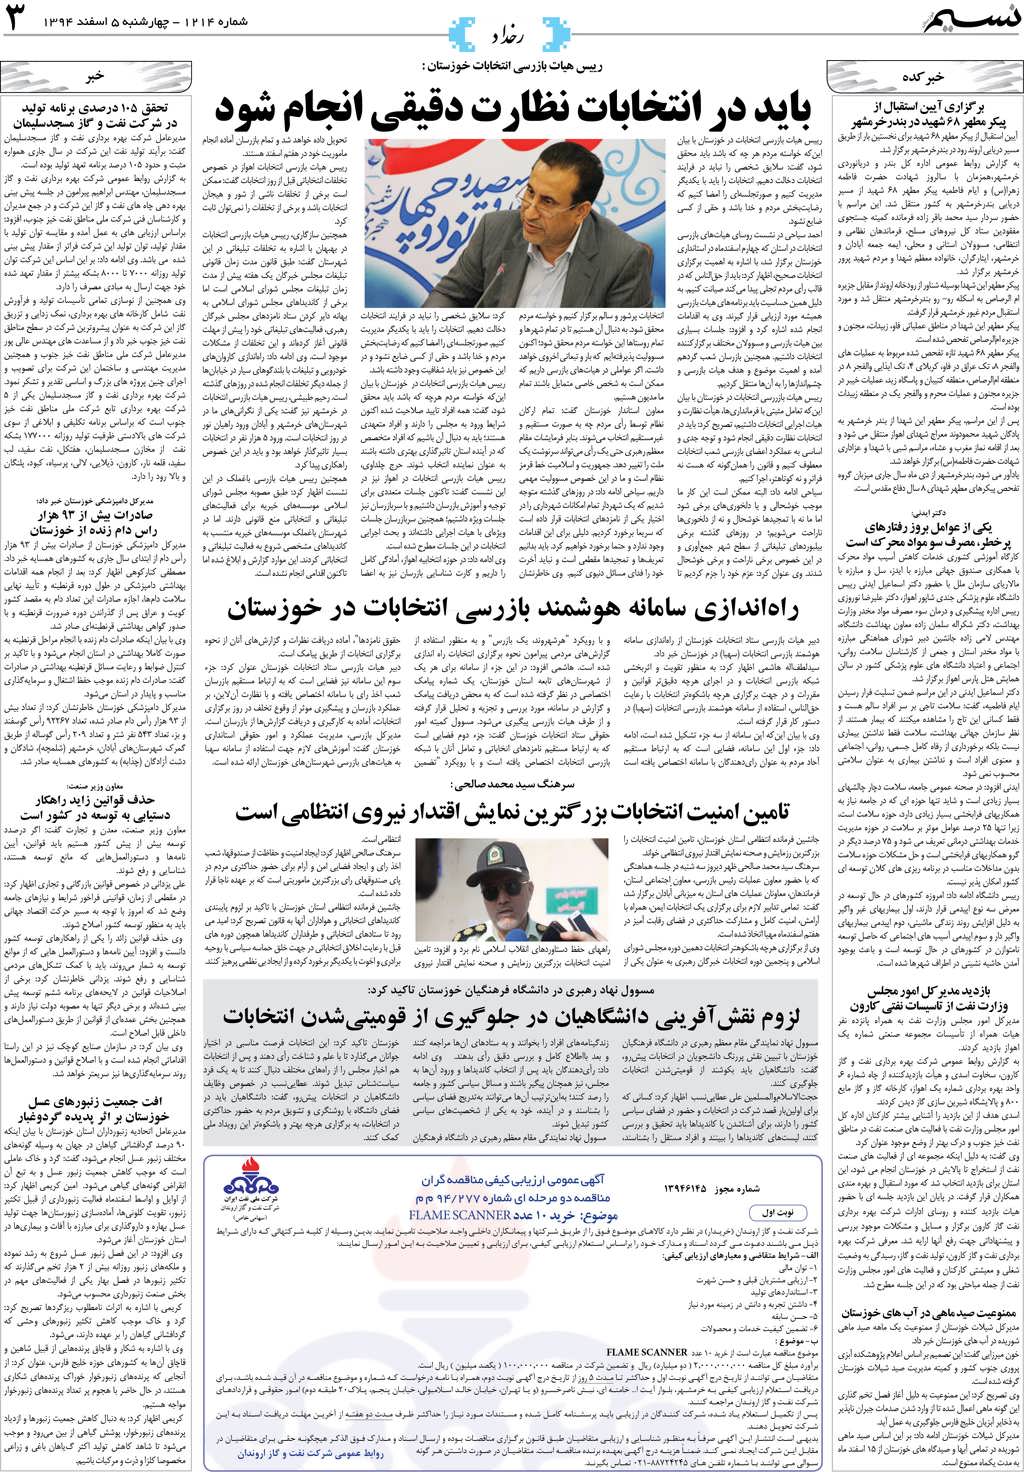 صفحه رخداد روزنامه نسیم شماره 1214